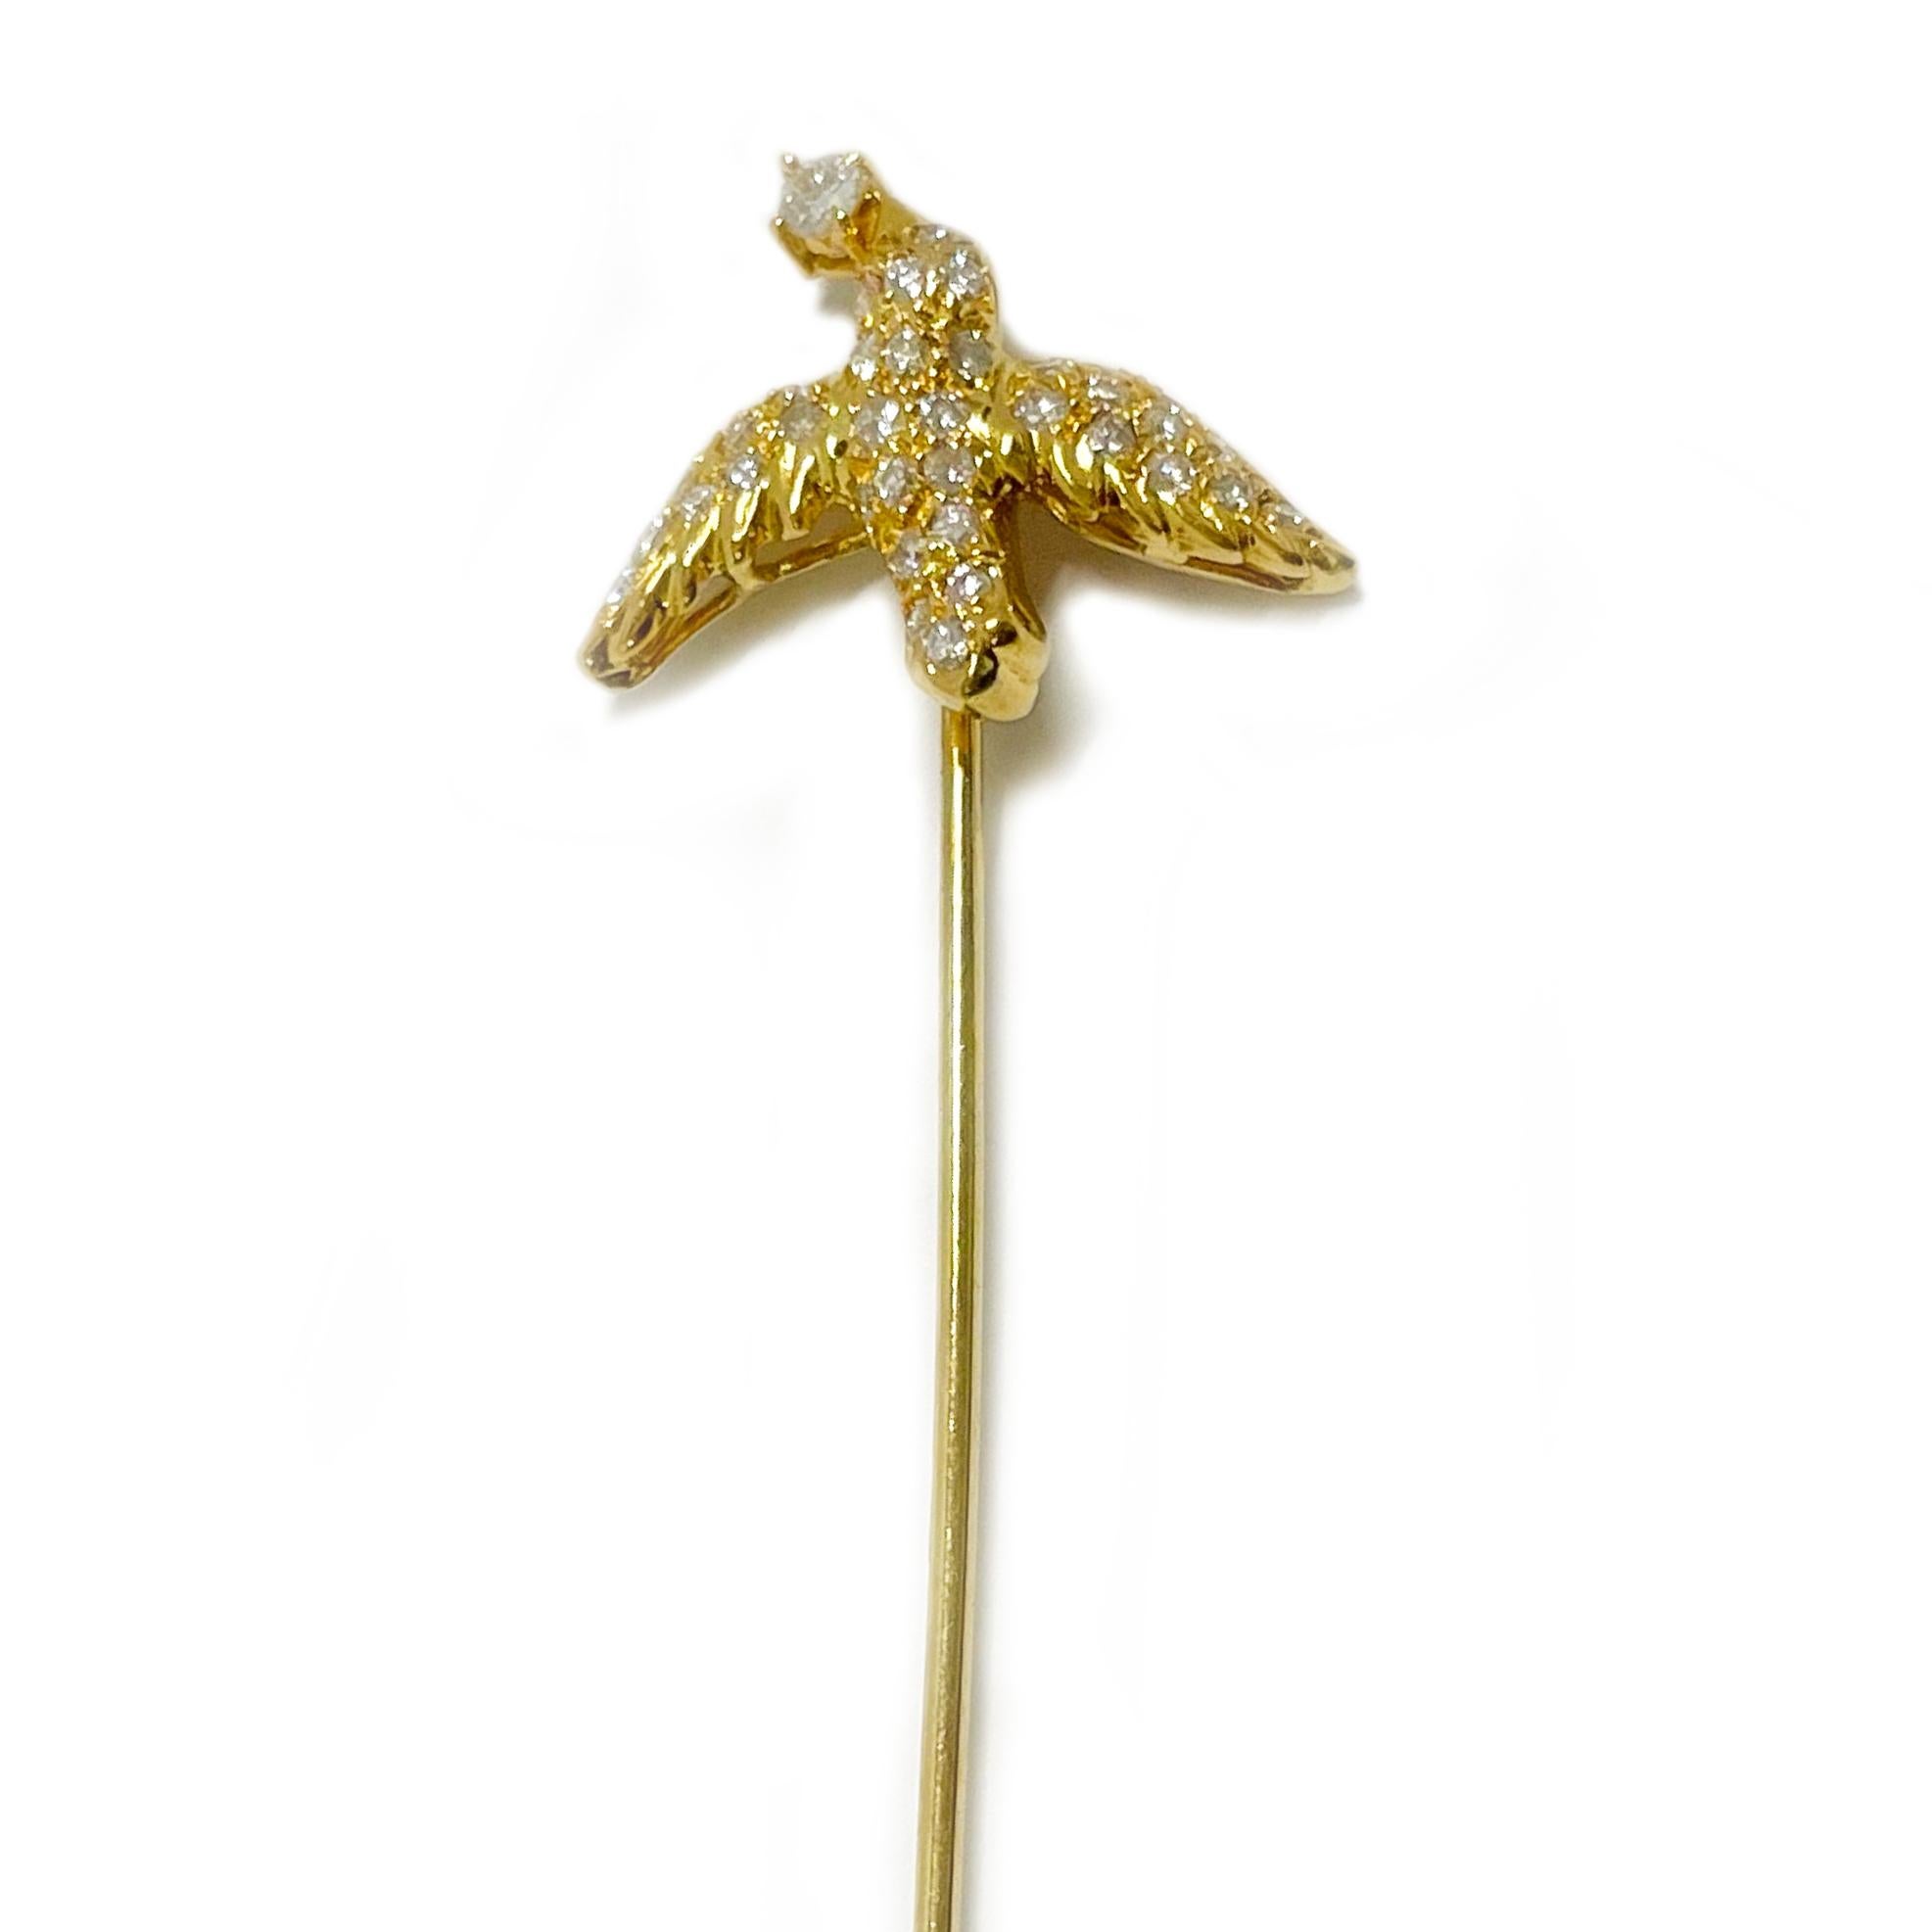 Getestet 18 Karat Gelbgold Diamant Vogel Stick Pin. Diese bezaubernde Brosche ist mit neununddreißig runden Diamanten im Brillantschliff besetzt, die den Körper, die Flügel und den Kopf des Vogels zieren. Es gibt einen 2,6-mm-Diamanten und